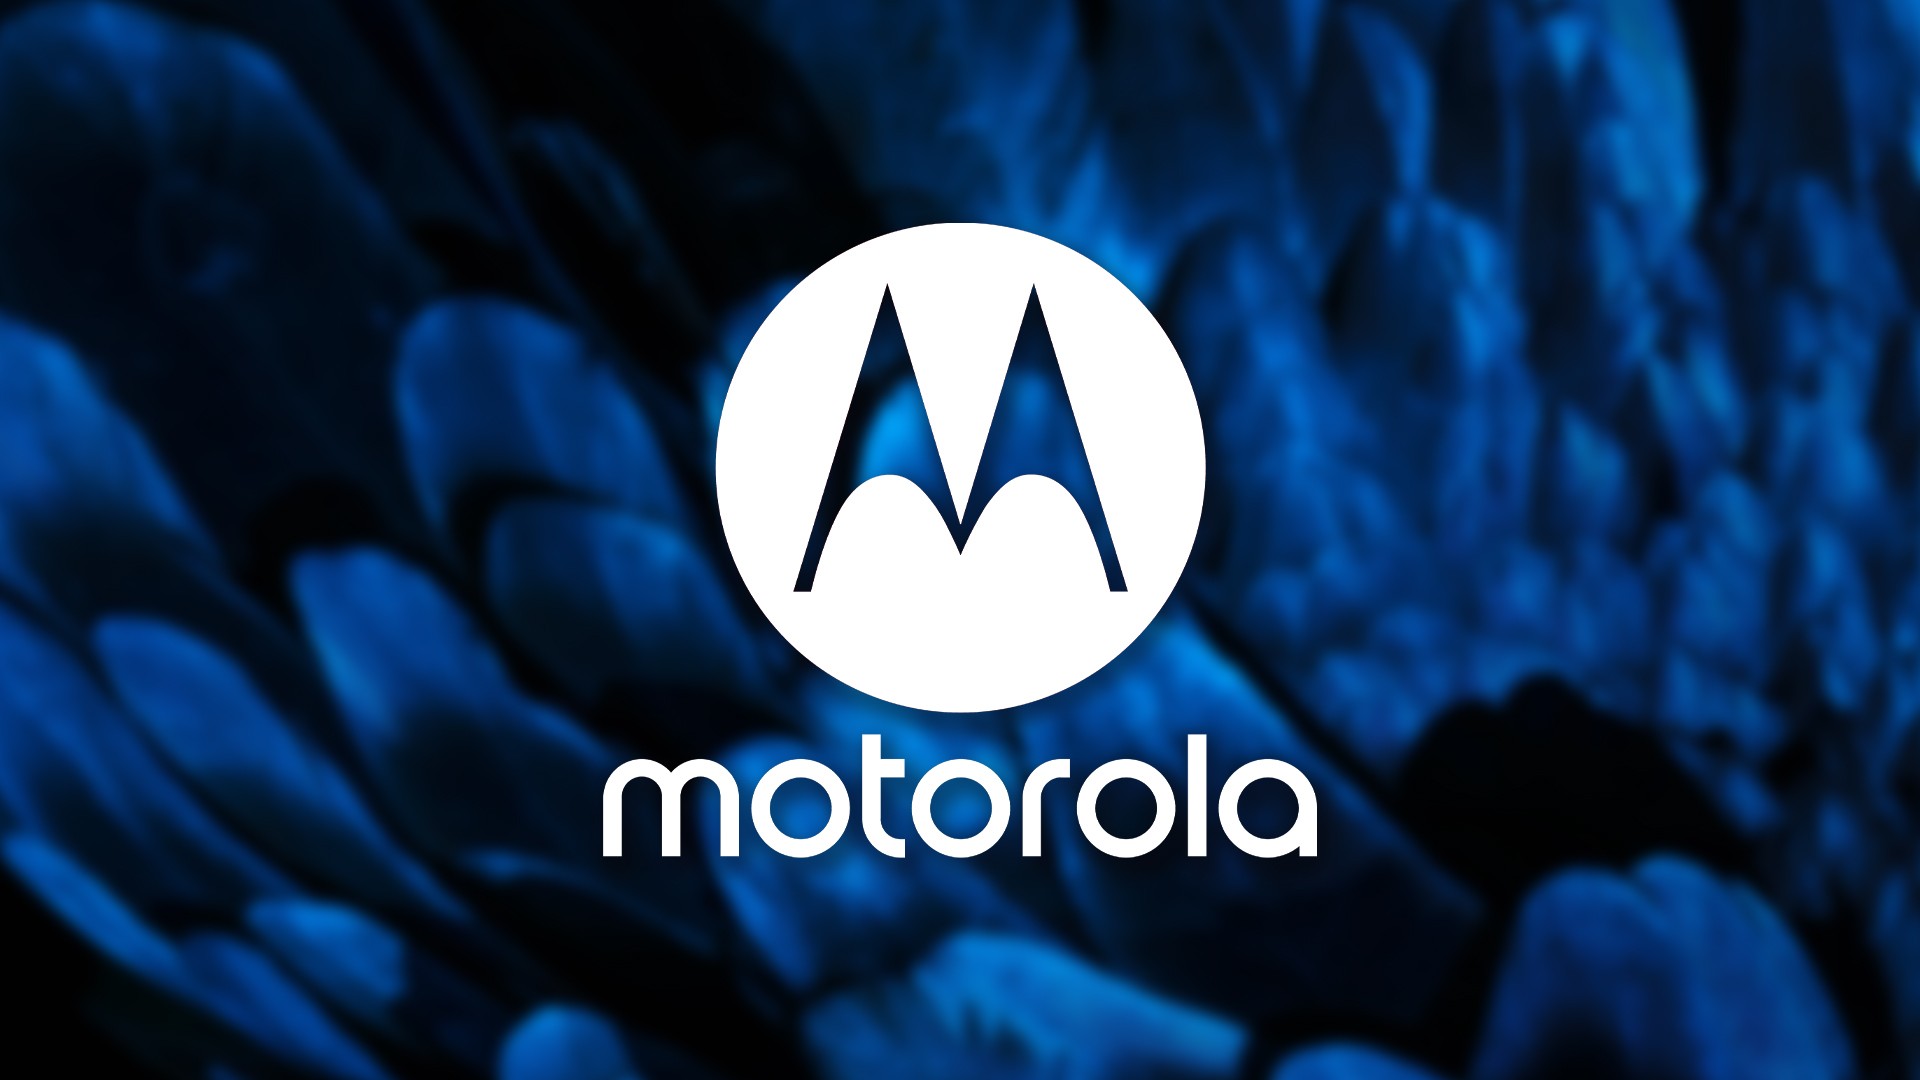 Cmera sob a tela: Motorola pode lanar celular com esta tecnologia no incio de 2022